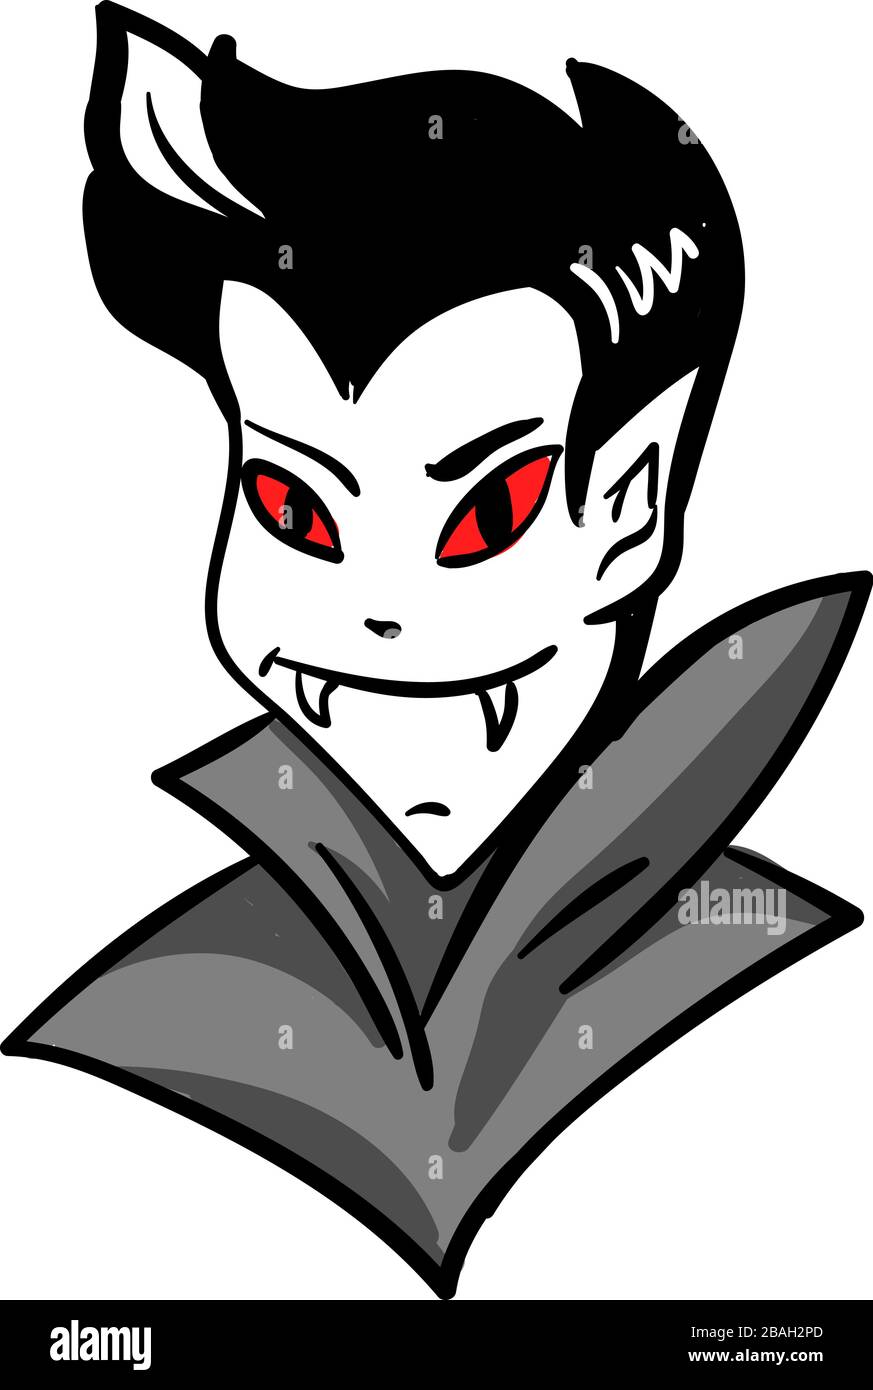 Vampire head, illustration, vector on white background Stock Vector